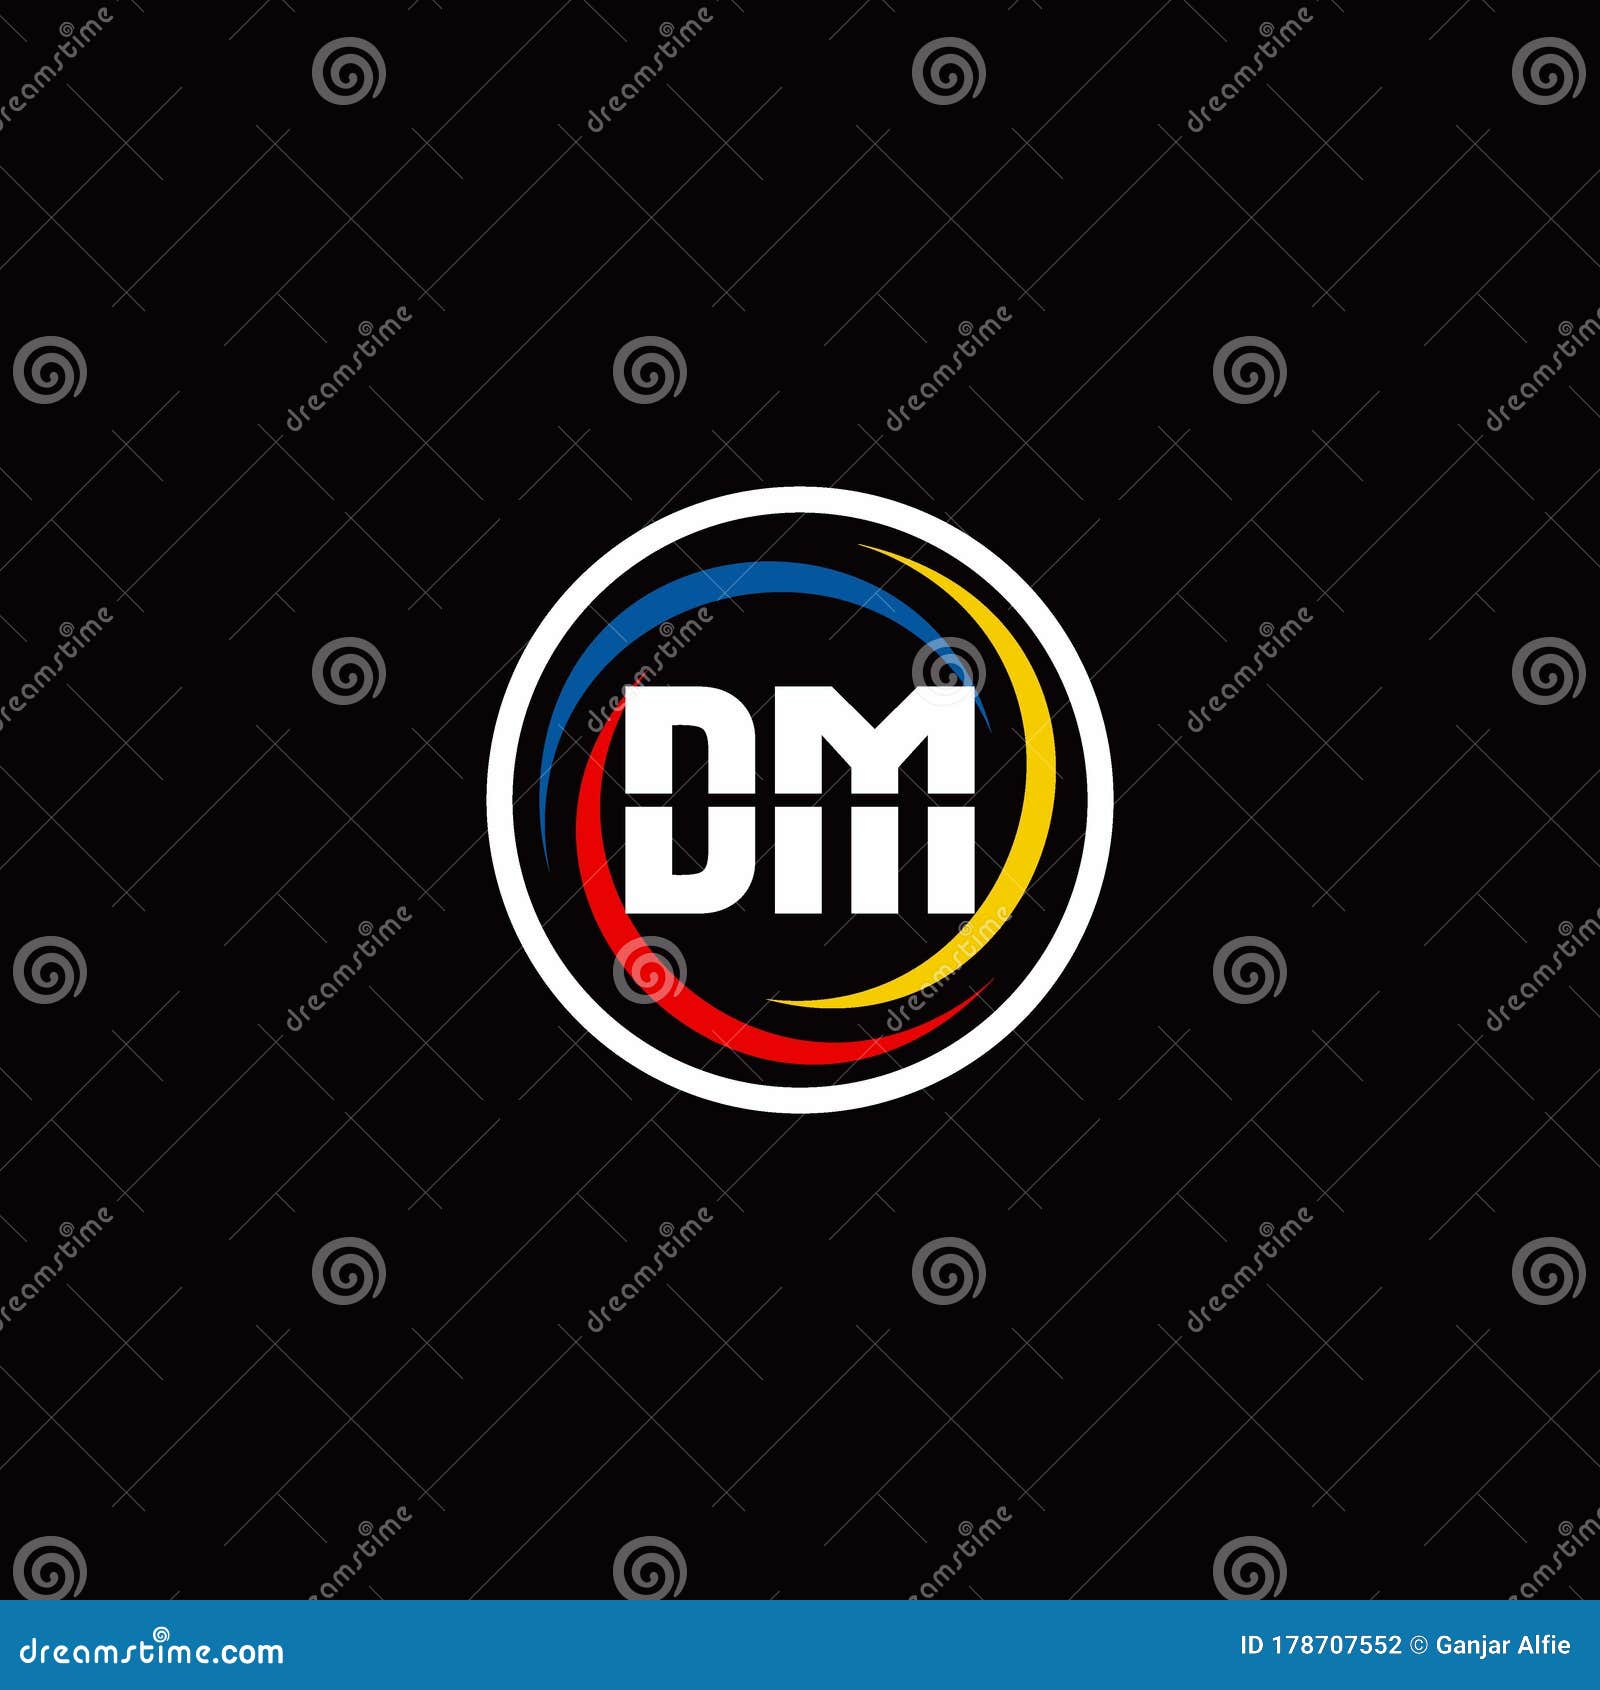 DM Monogram Logo Isolated on Circle Shape with 3 Slash Colors Rounded ...